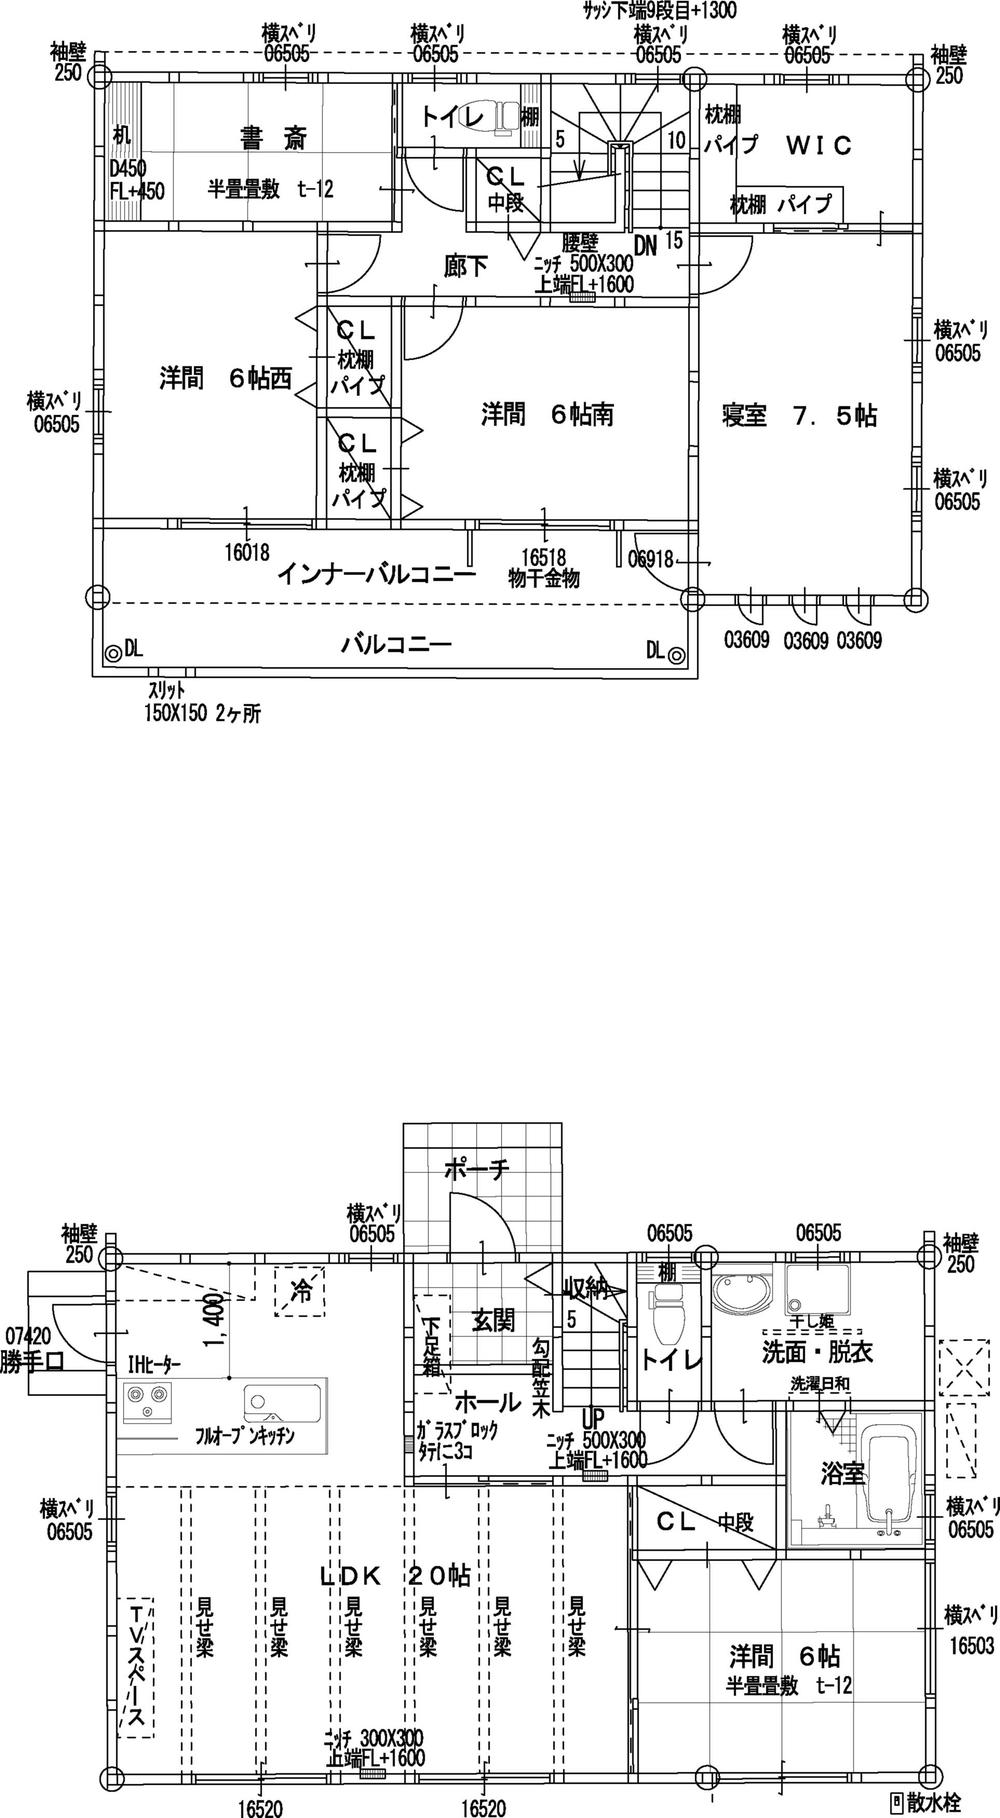 Floor plan. 25,800,000 yen, 4LDK, Land area 206.35 sq m , Building area 120.91 sq m Floor